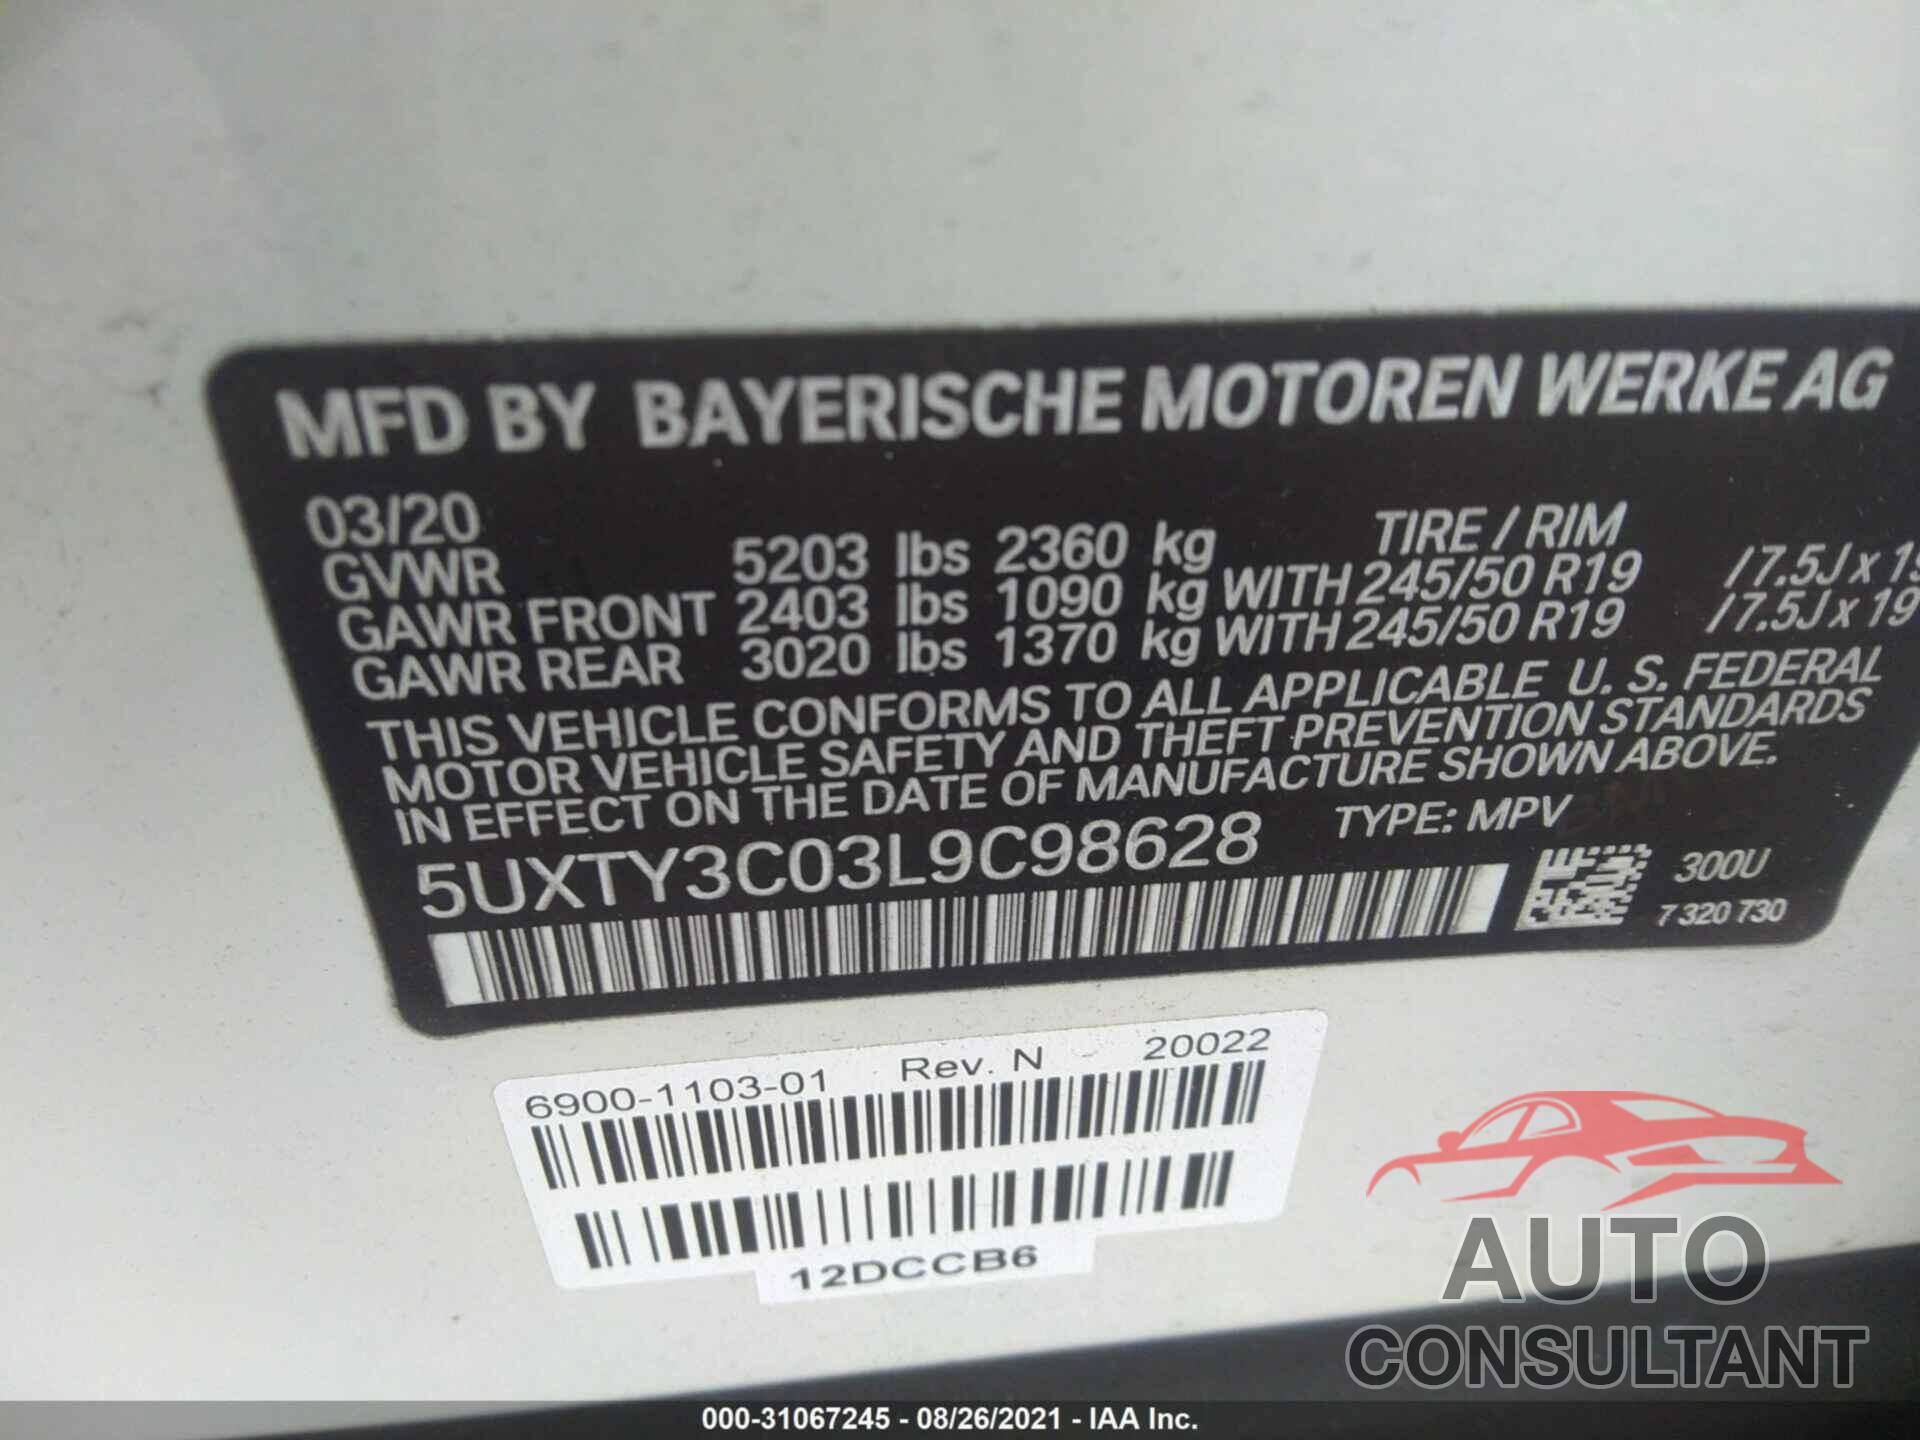 BMW X3 2020 - 5UXTY3C03L9C98628